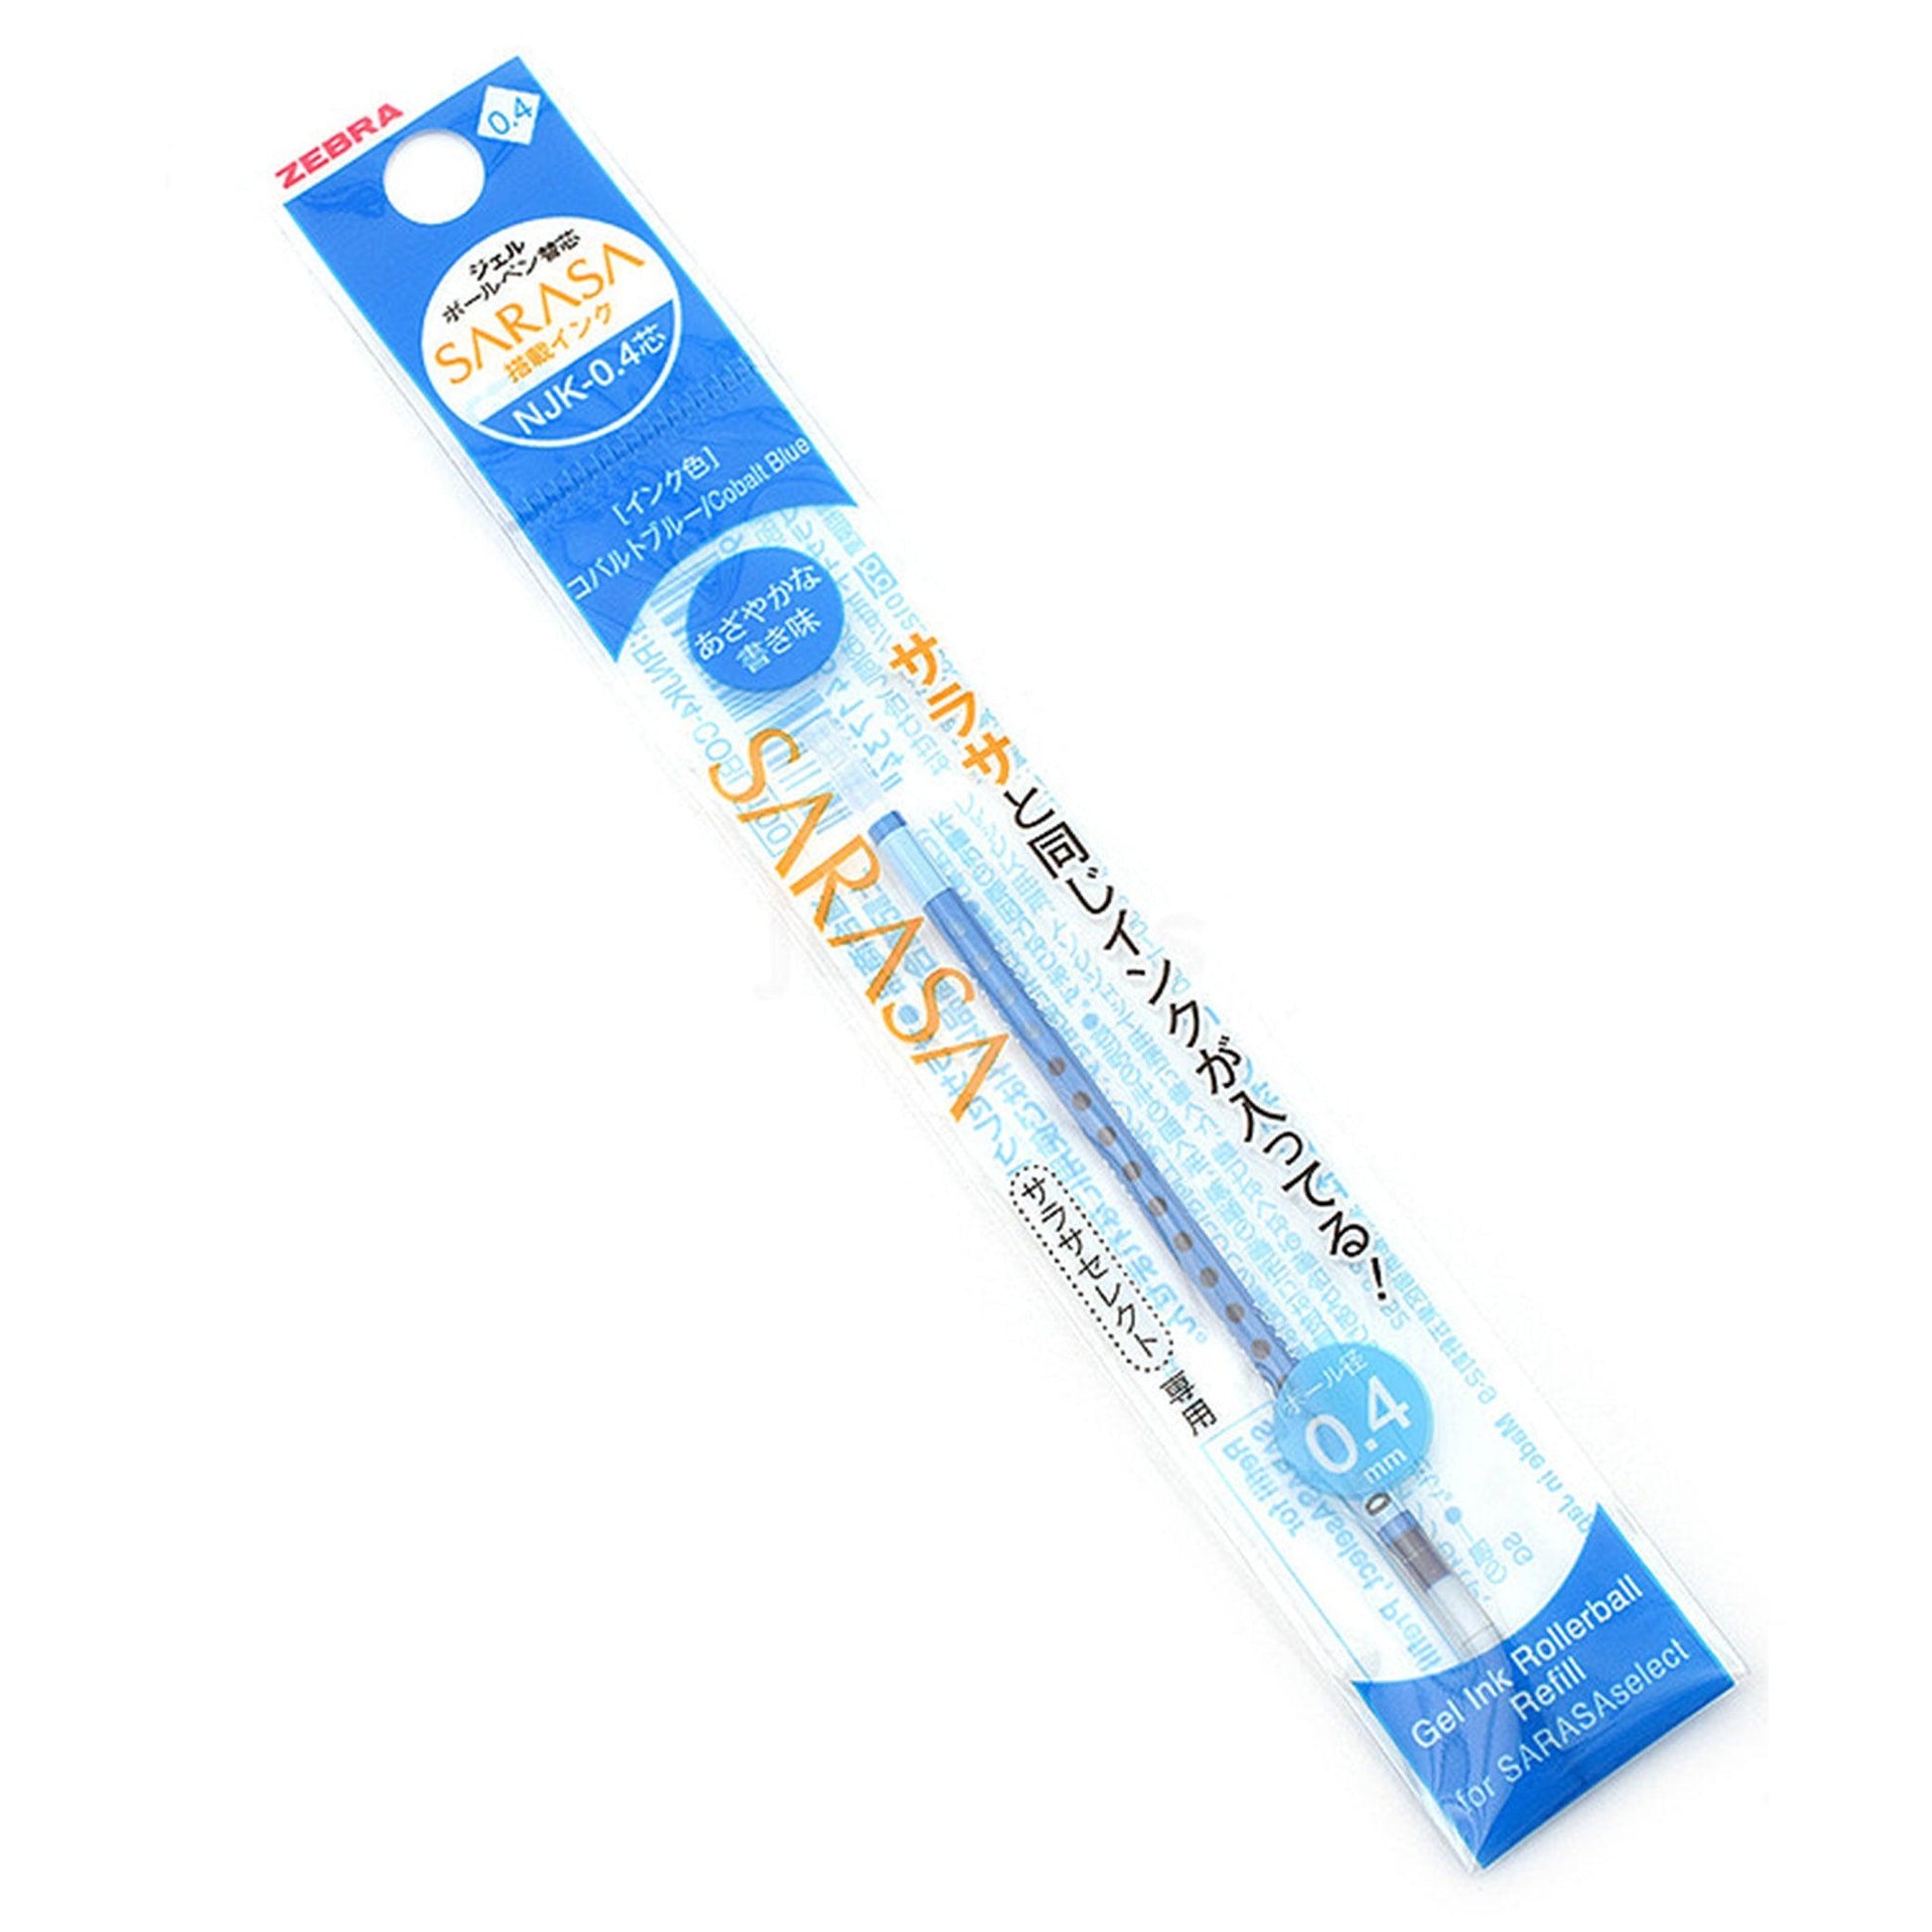 ZEBRA NJK-0.4 Prefill pen tube 0.4mm refill water-based ballpoint pen Black Blue - CHL-STORE 